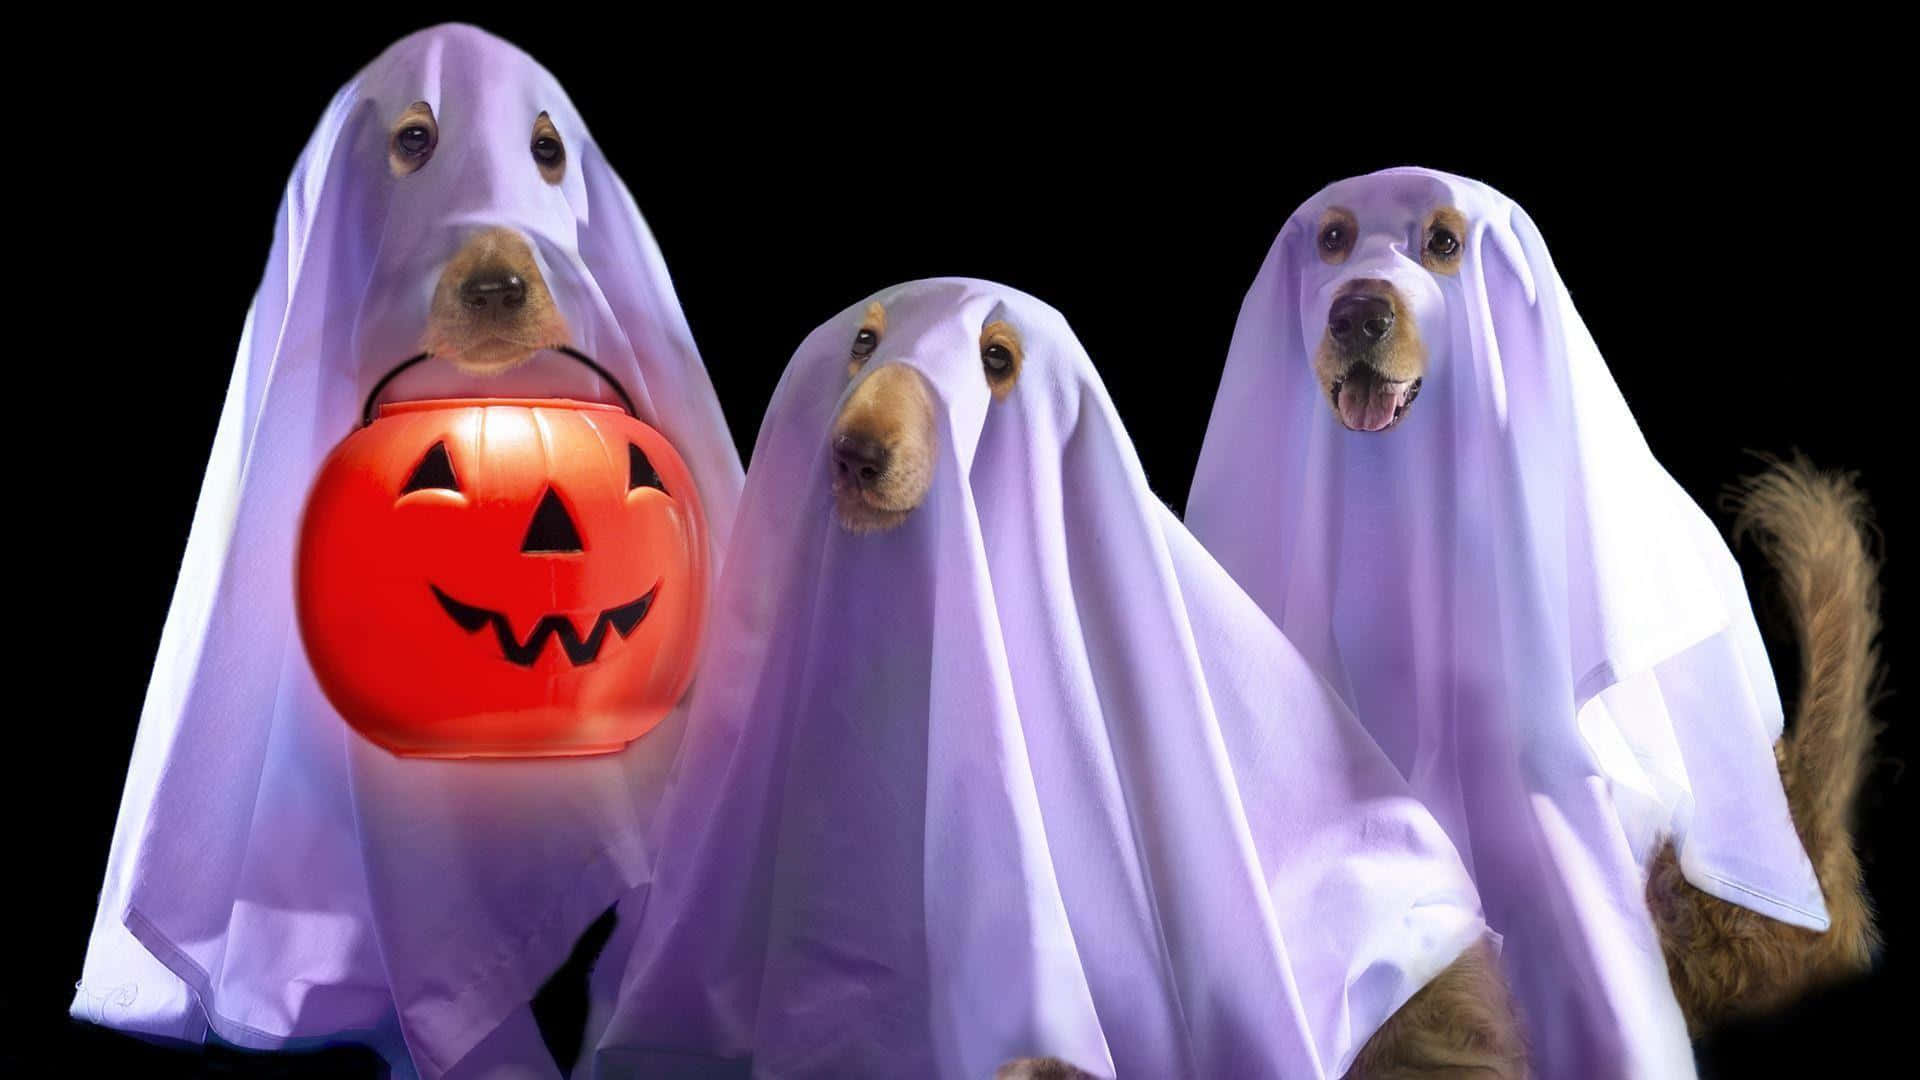 Roligaspökliknande Hundar Halloween-bilder.